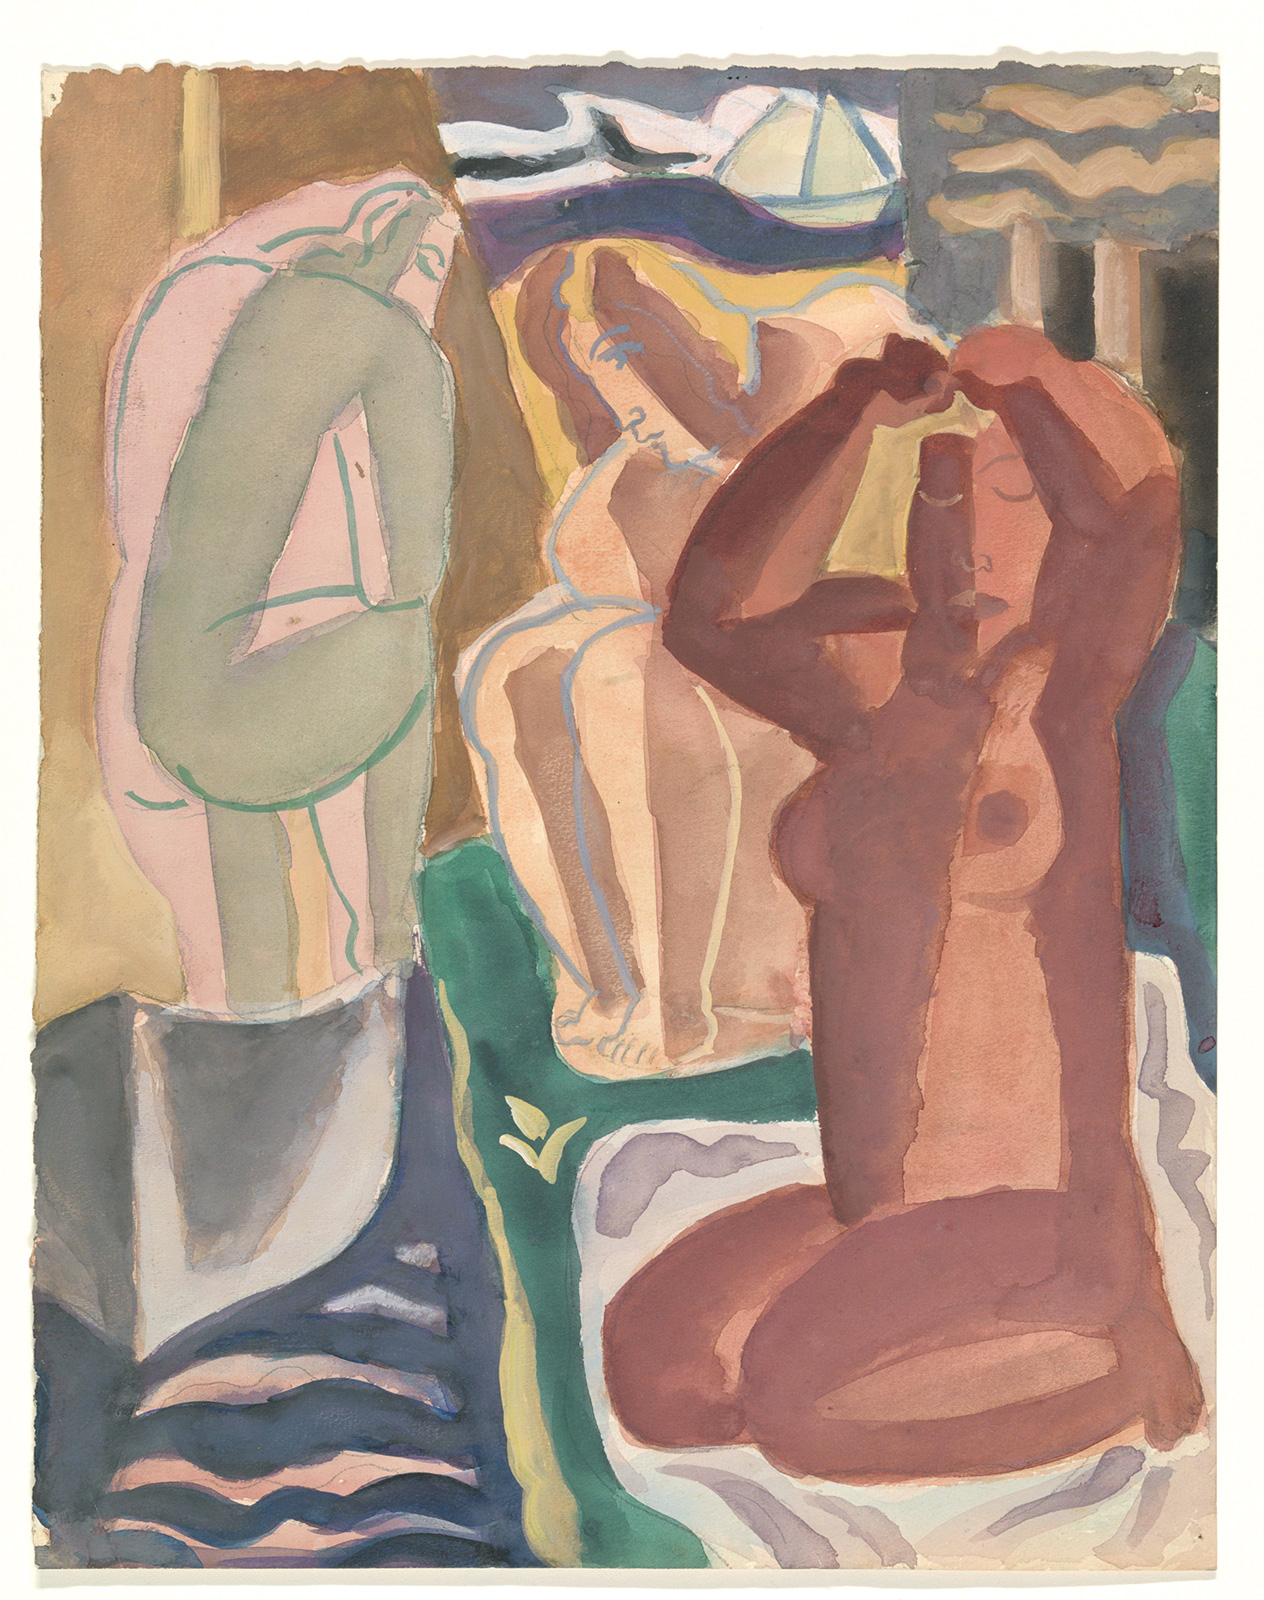 Leo Gestel, *Dos mujeres bañándose y una figura de espaldas*, *ca*. 1929-30, Rijksmuseum